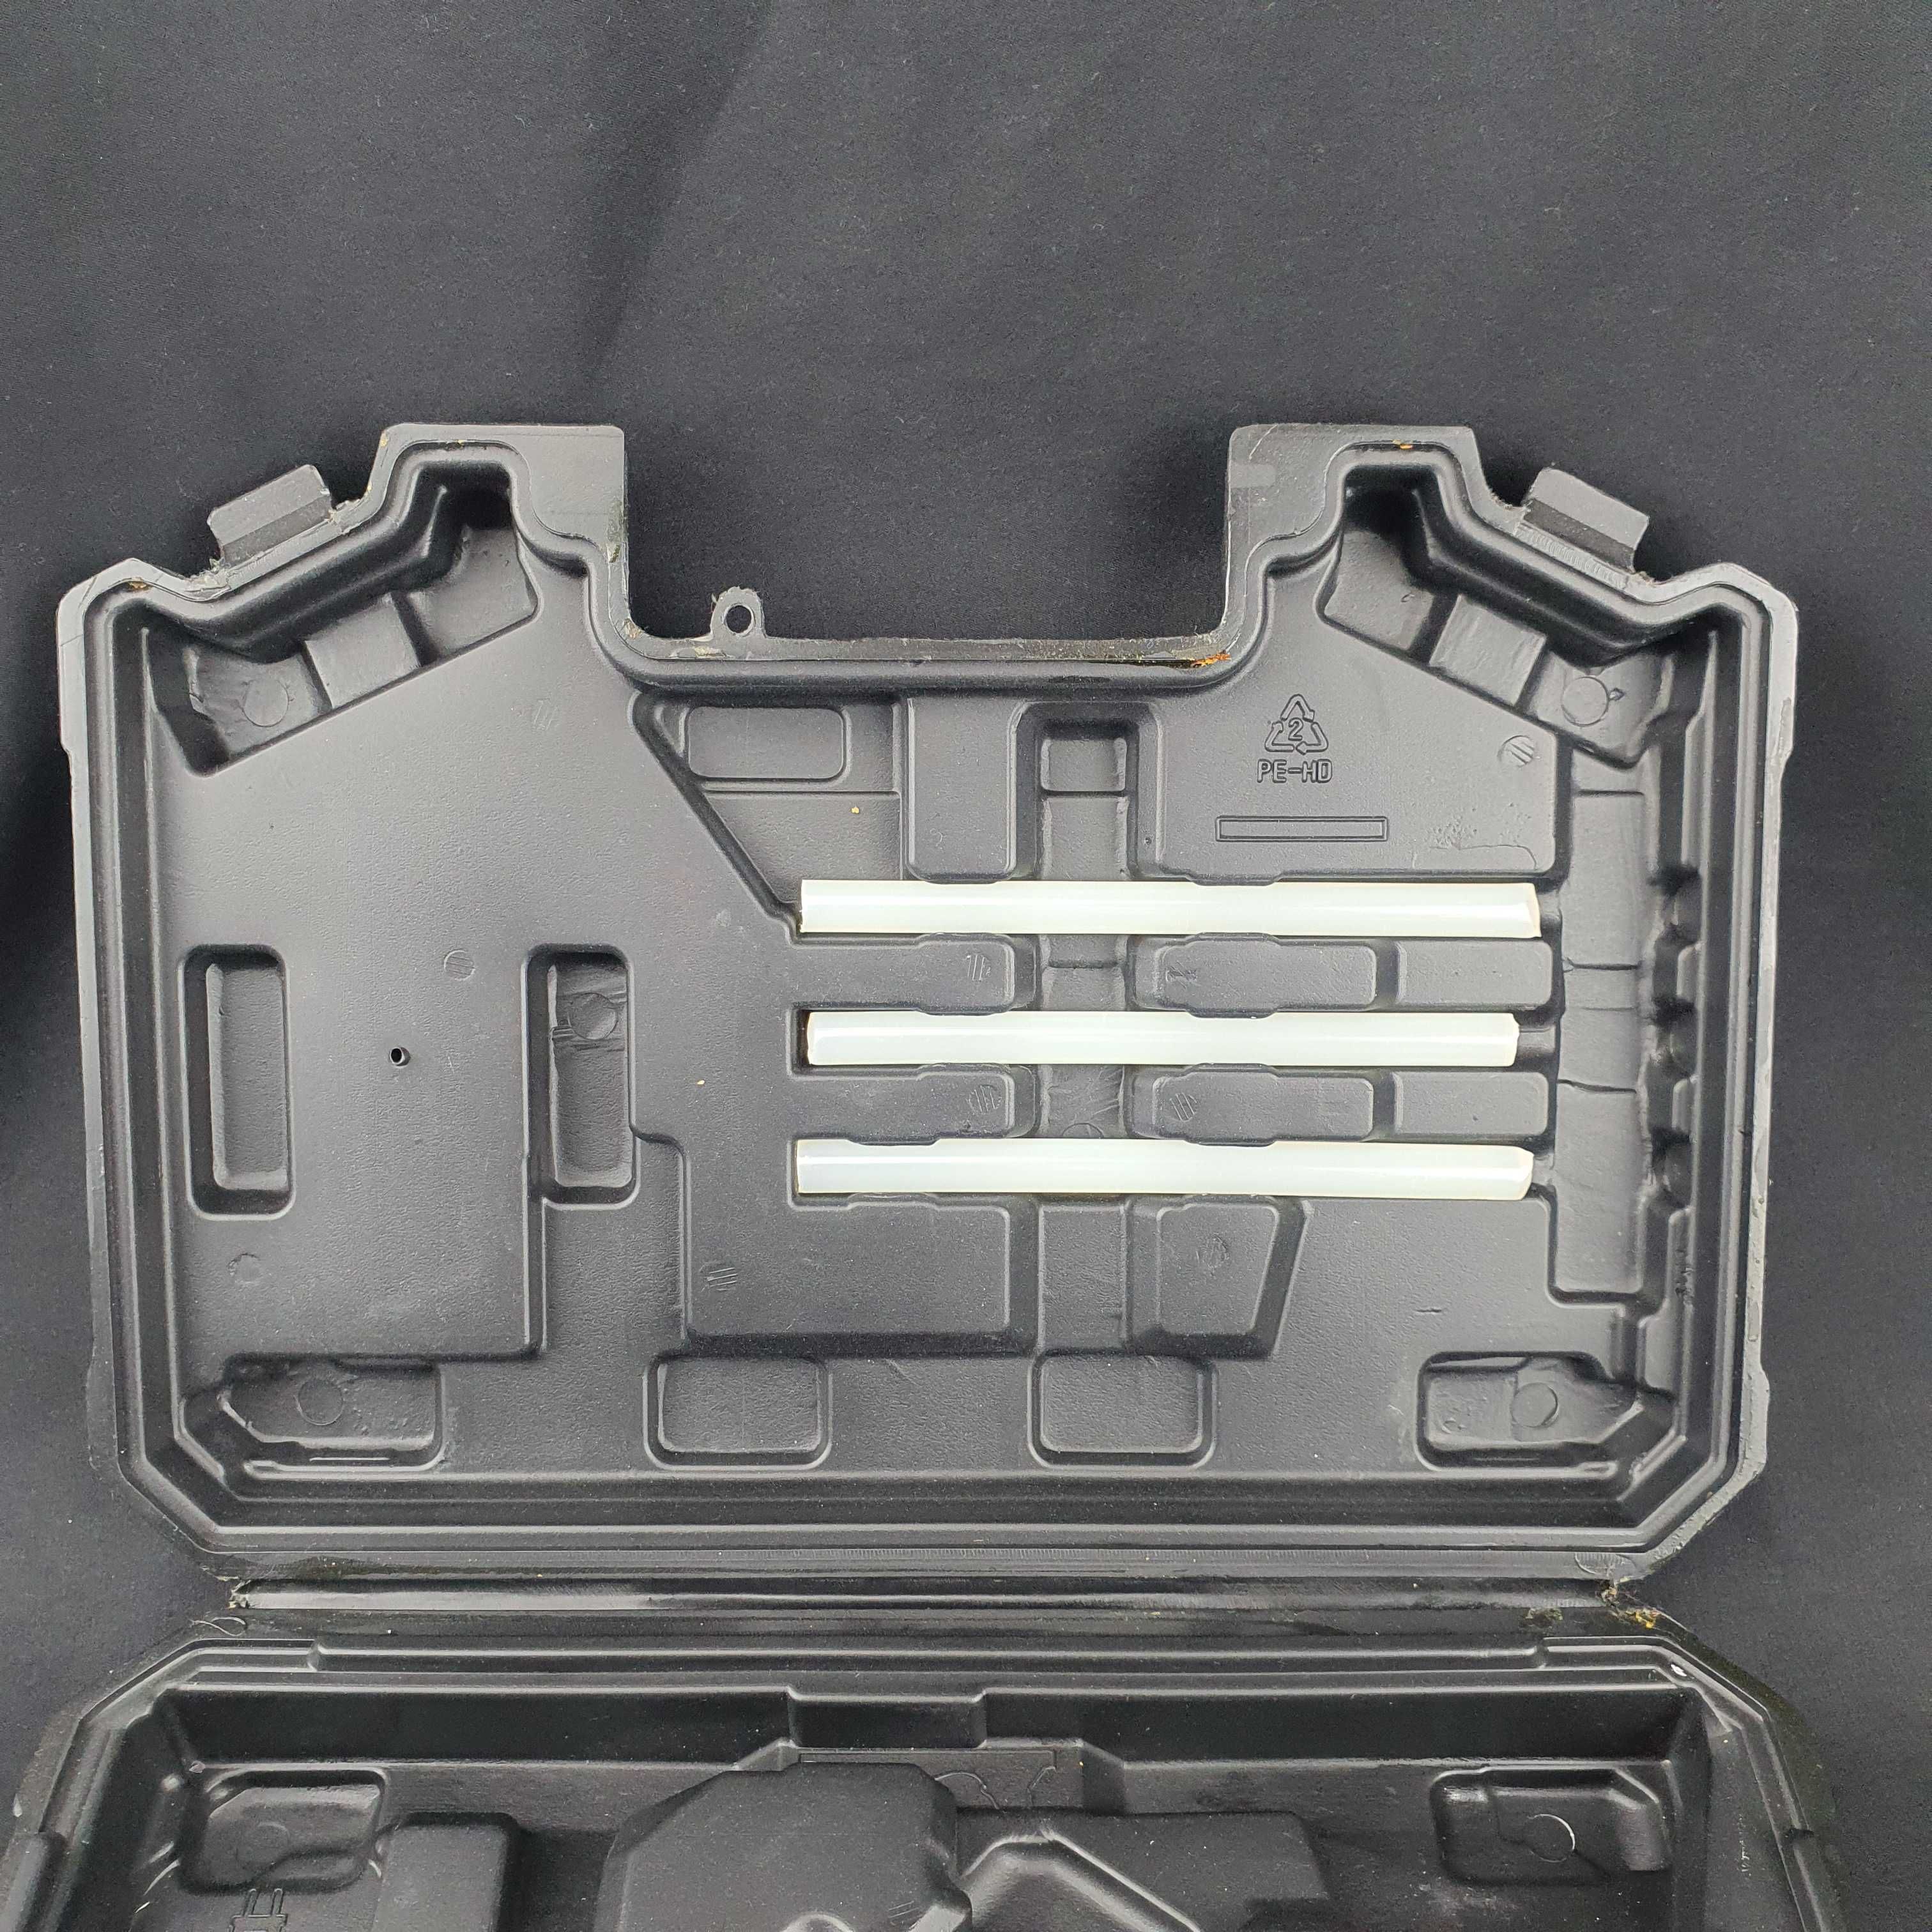 Carcasa transport pistol de lipit batoane silicon Parkside +Suport NOU